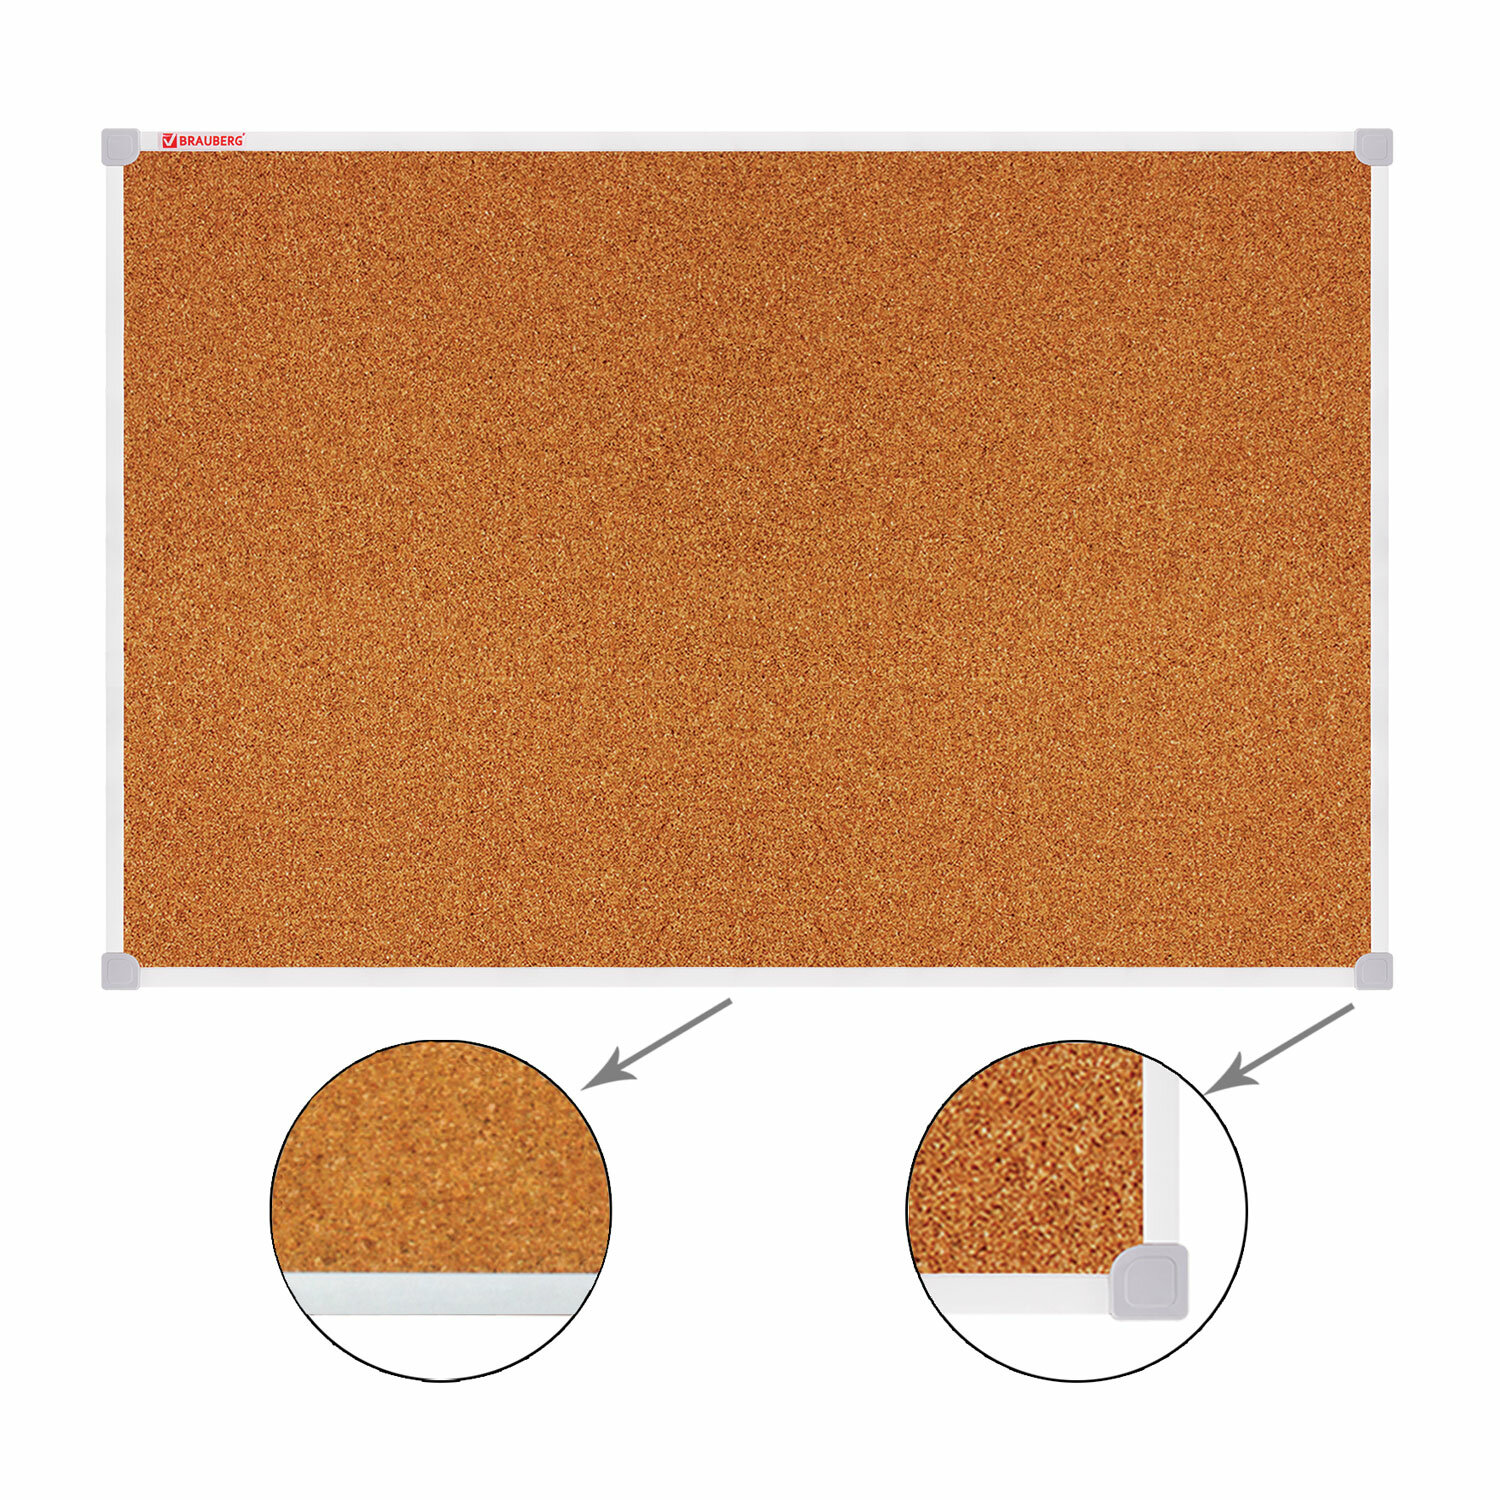 Демонстрационная доска Brauberg Cork пробковая, 50x70см, пробка (коричневый)/пластик (серый) (238188)